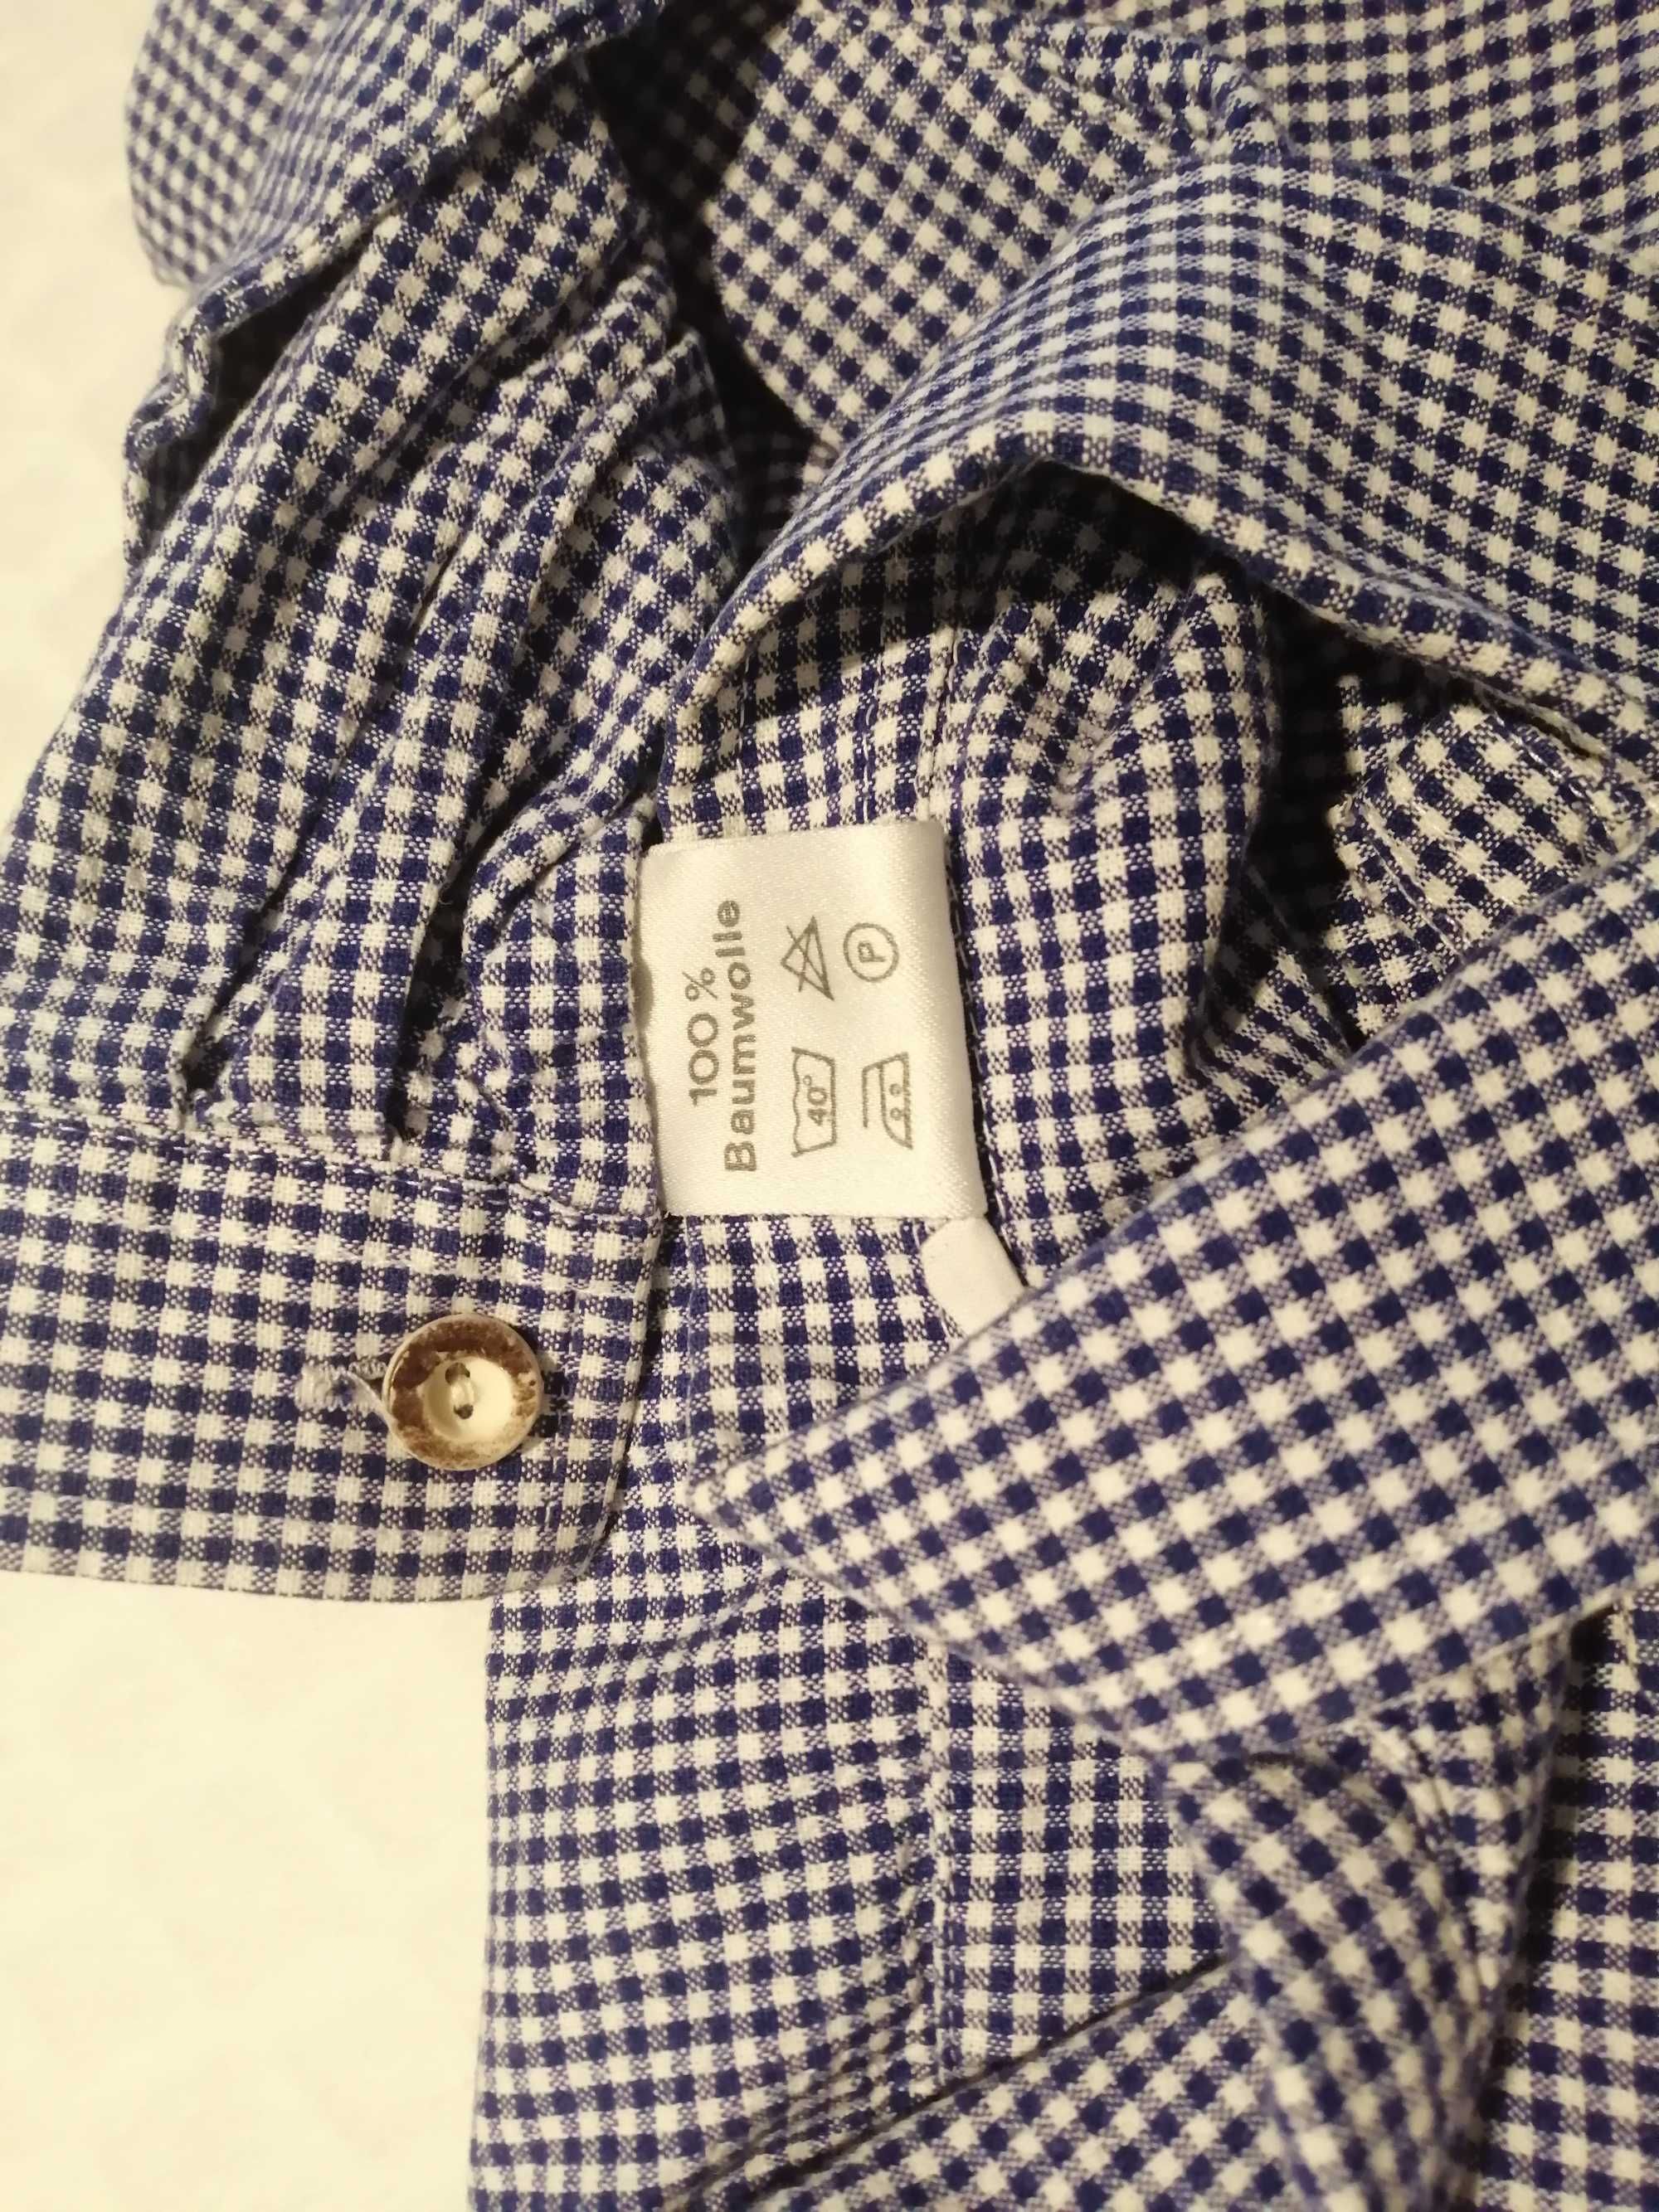 Koszula chłopięca, rozpinana, długi rękaw, 104, kratka (Odzież)